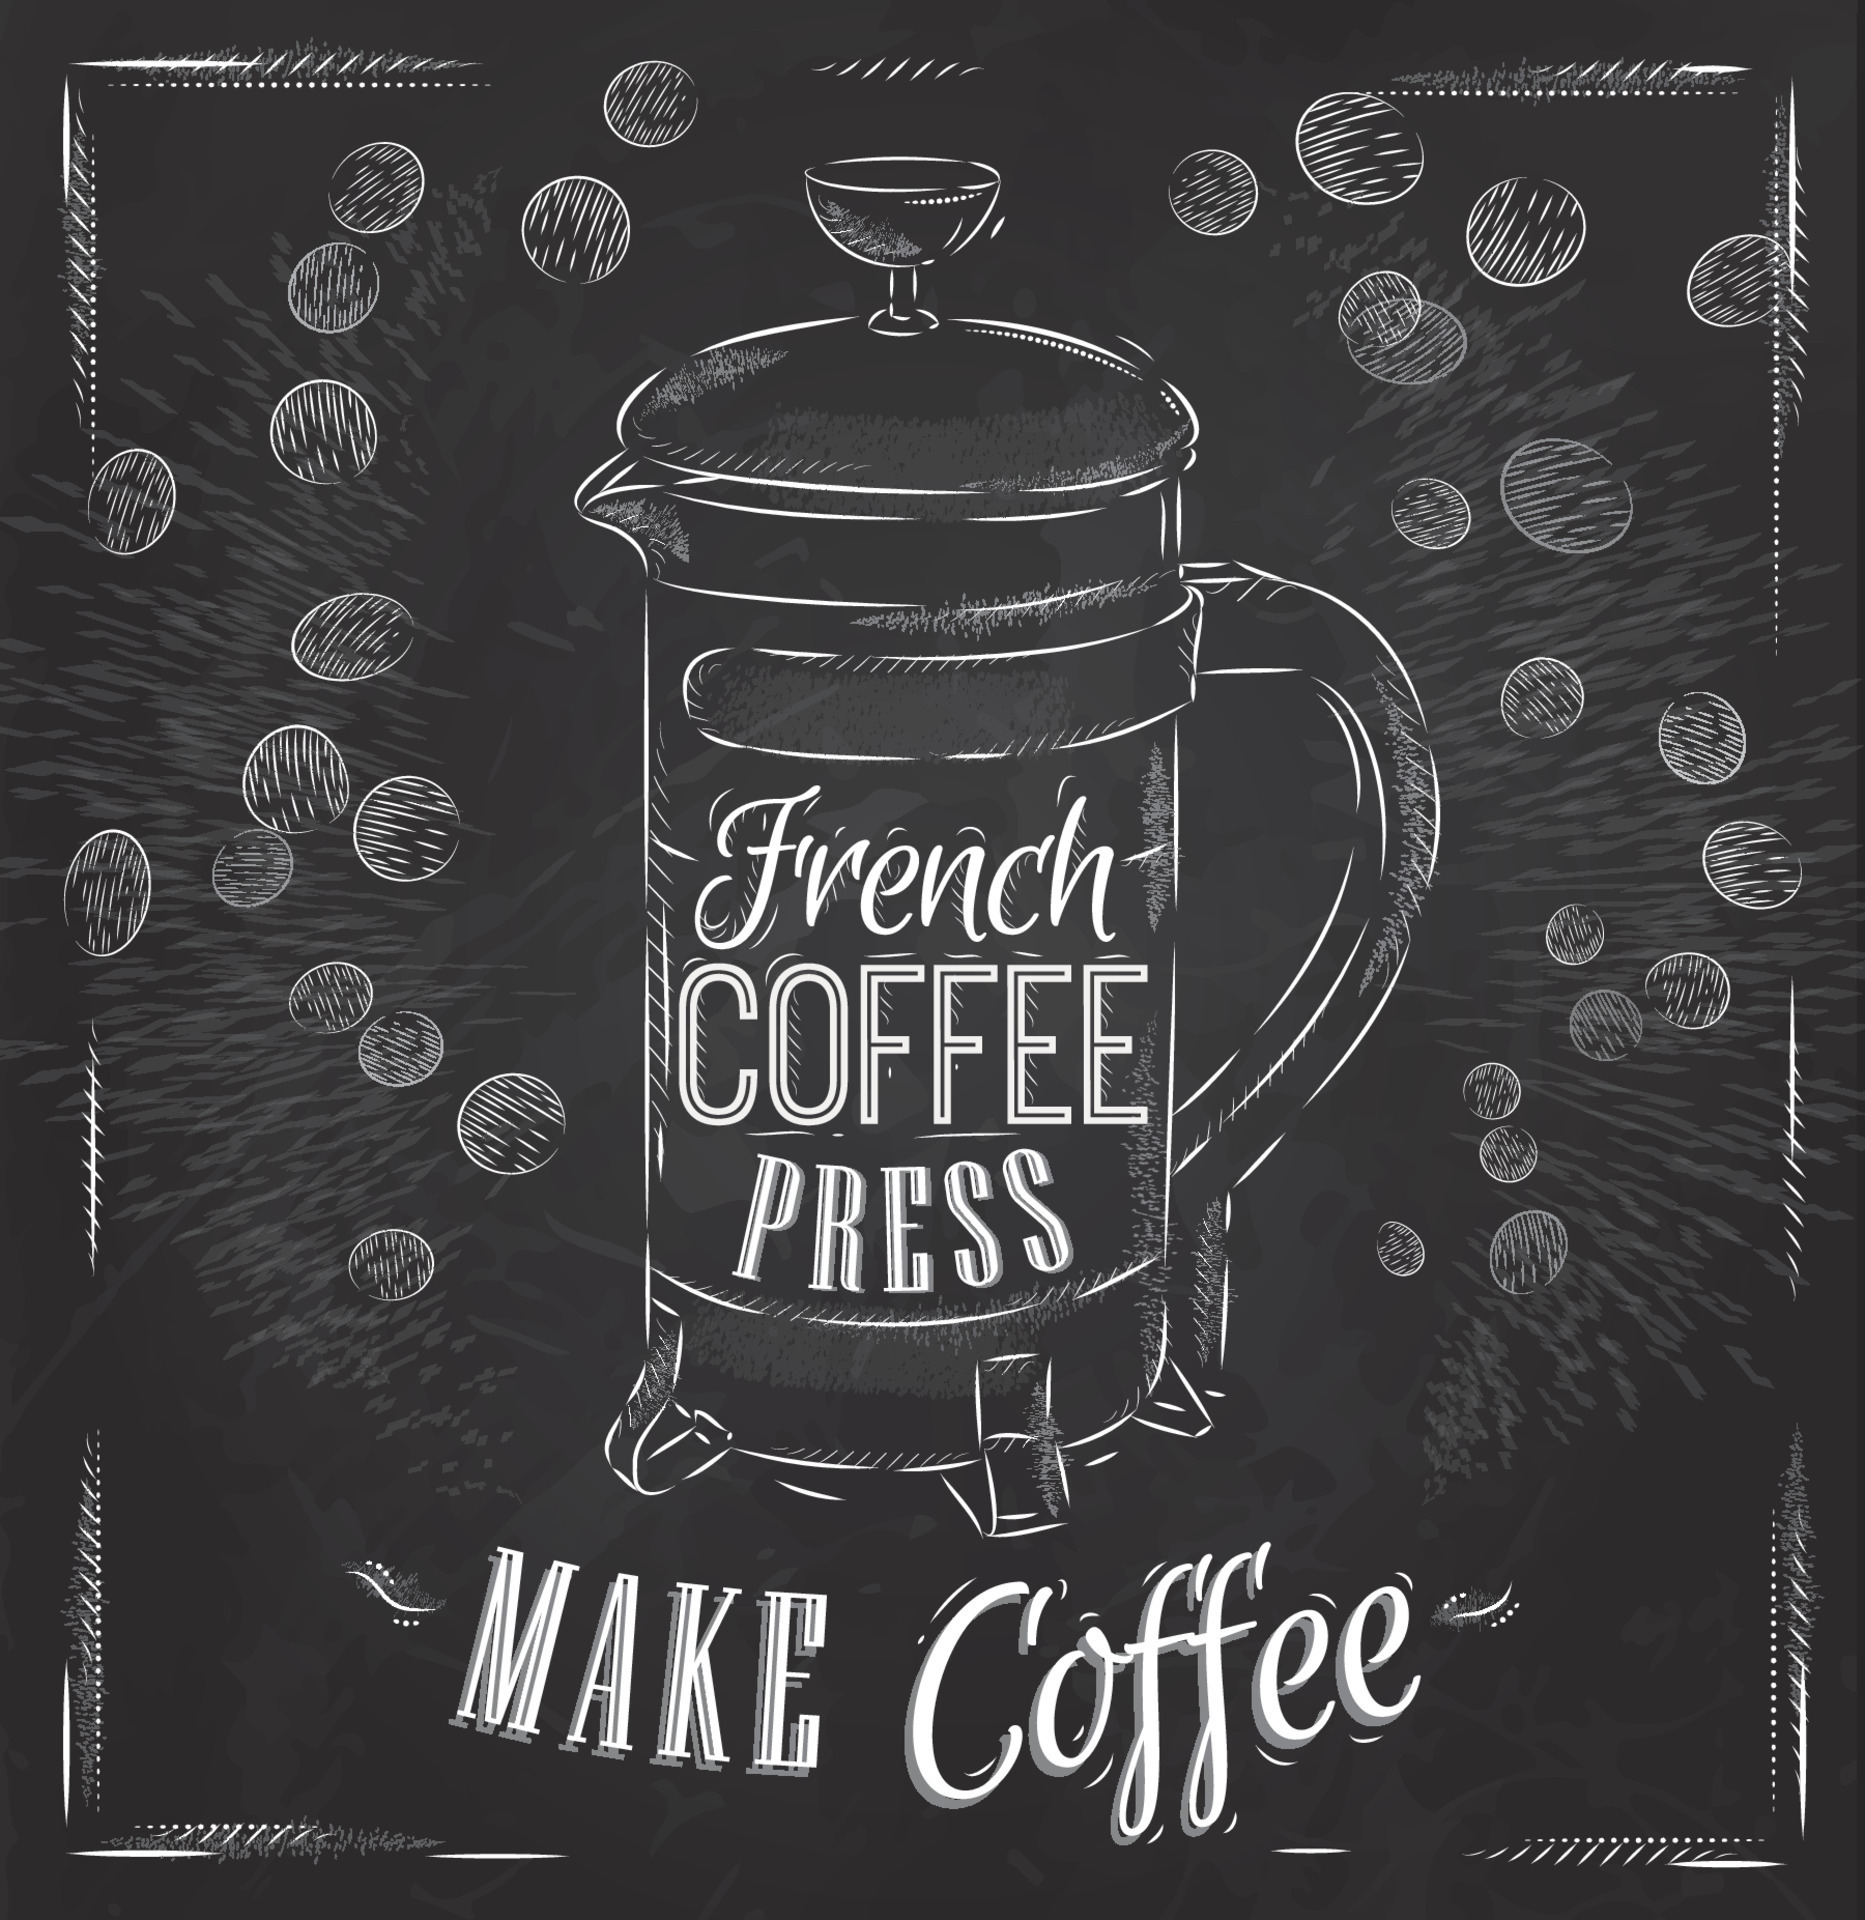 Caffè con la caffettiera francese: come si fa